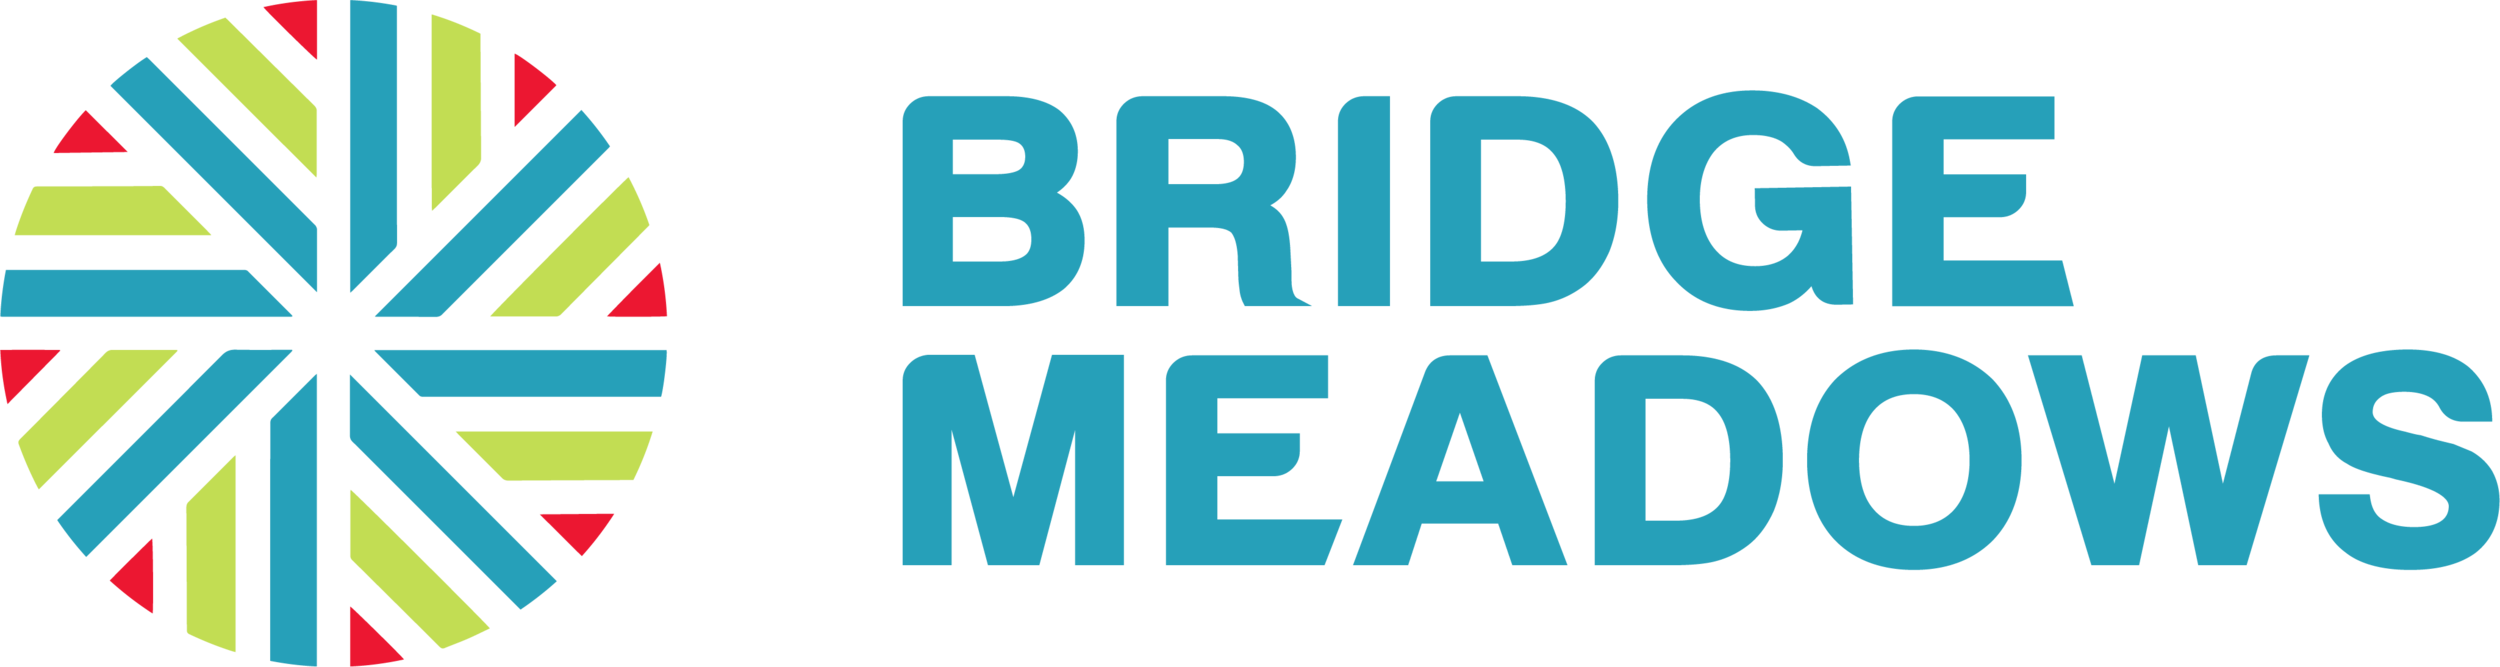 bridgemeadows_logo_FINAL_PMS.png